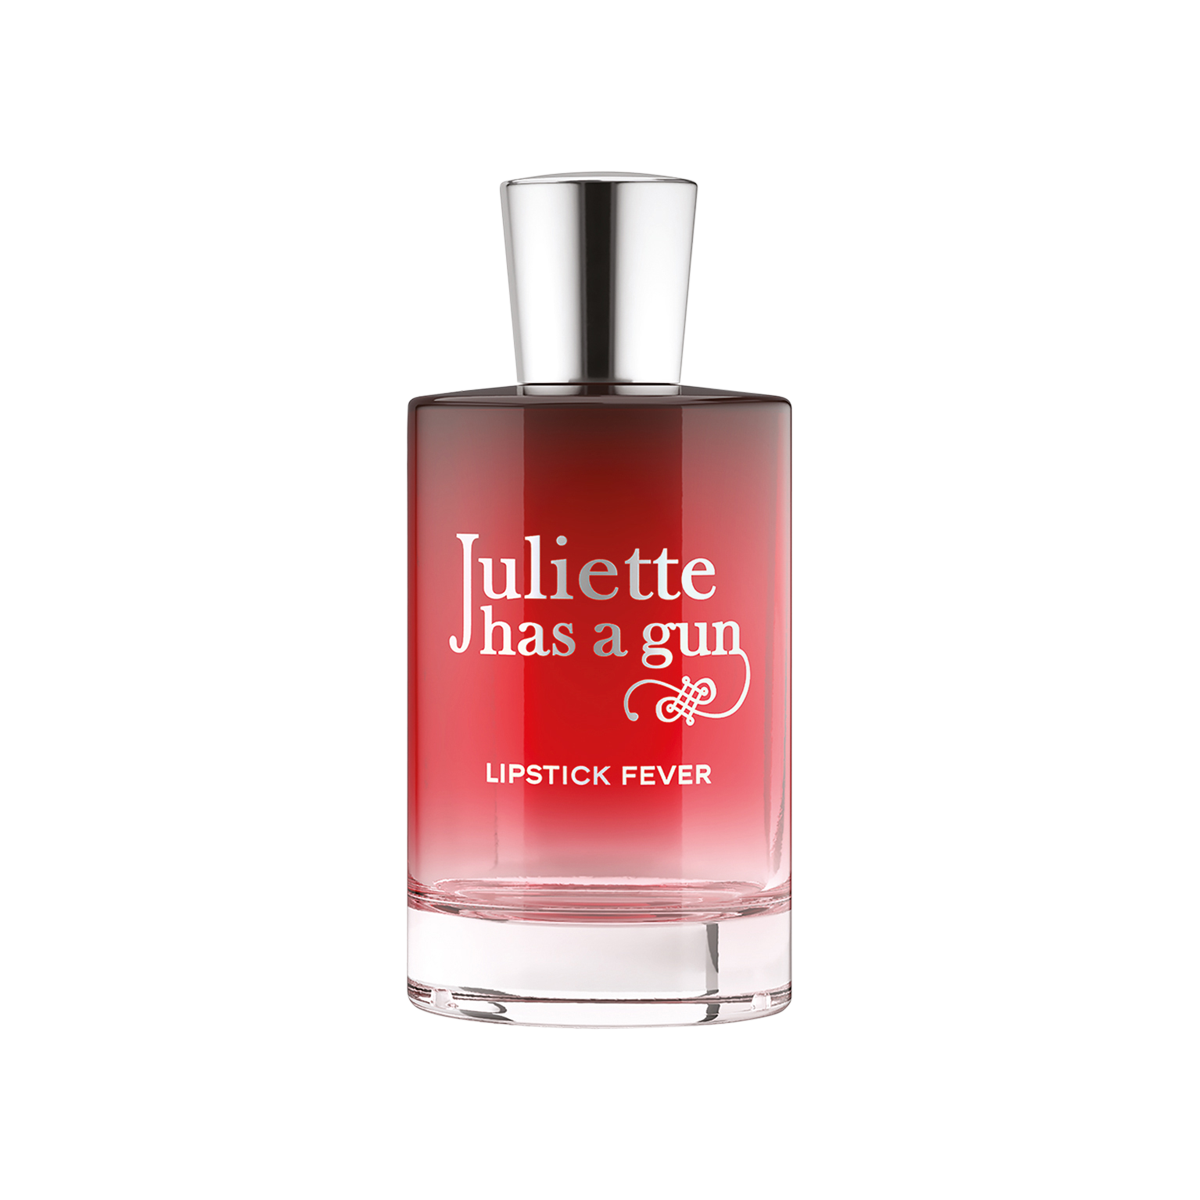 Juliette has a Gun - Lipstick Fever Eau de Parfum